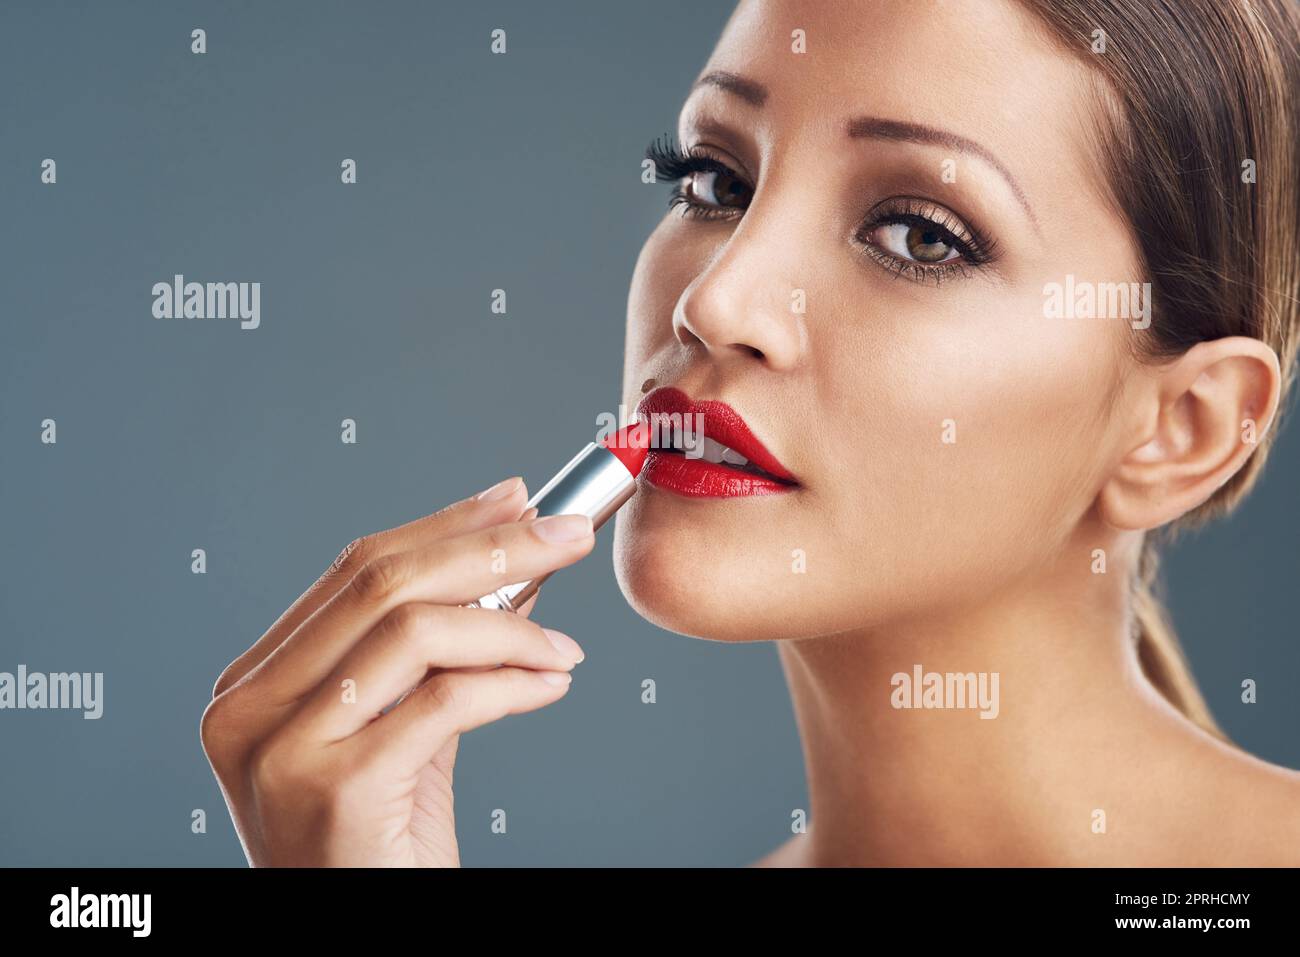 Aggiungere un tocco di glam con rossetto rosso. Studio ritratto di una bella giovane donna mettere su rossetto rosso su uno sfondo grigio. Foto Stock